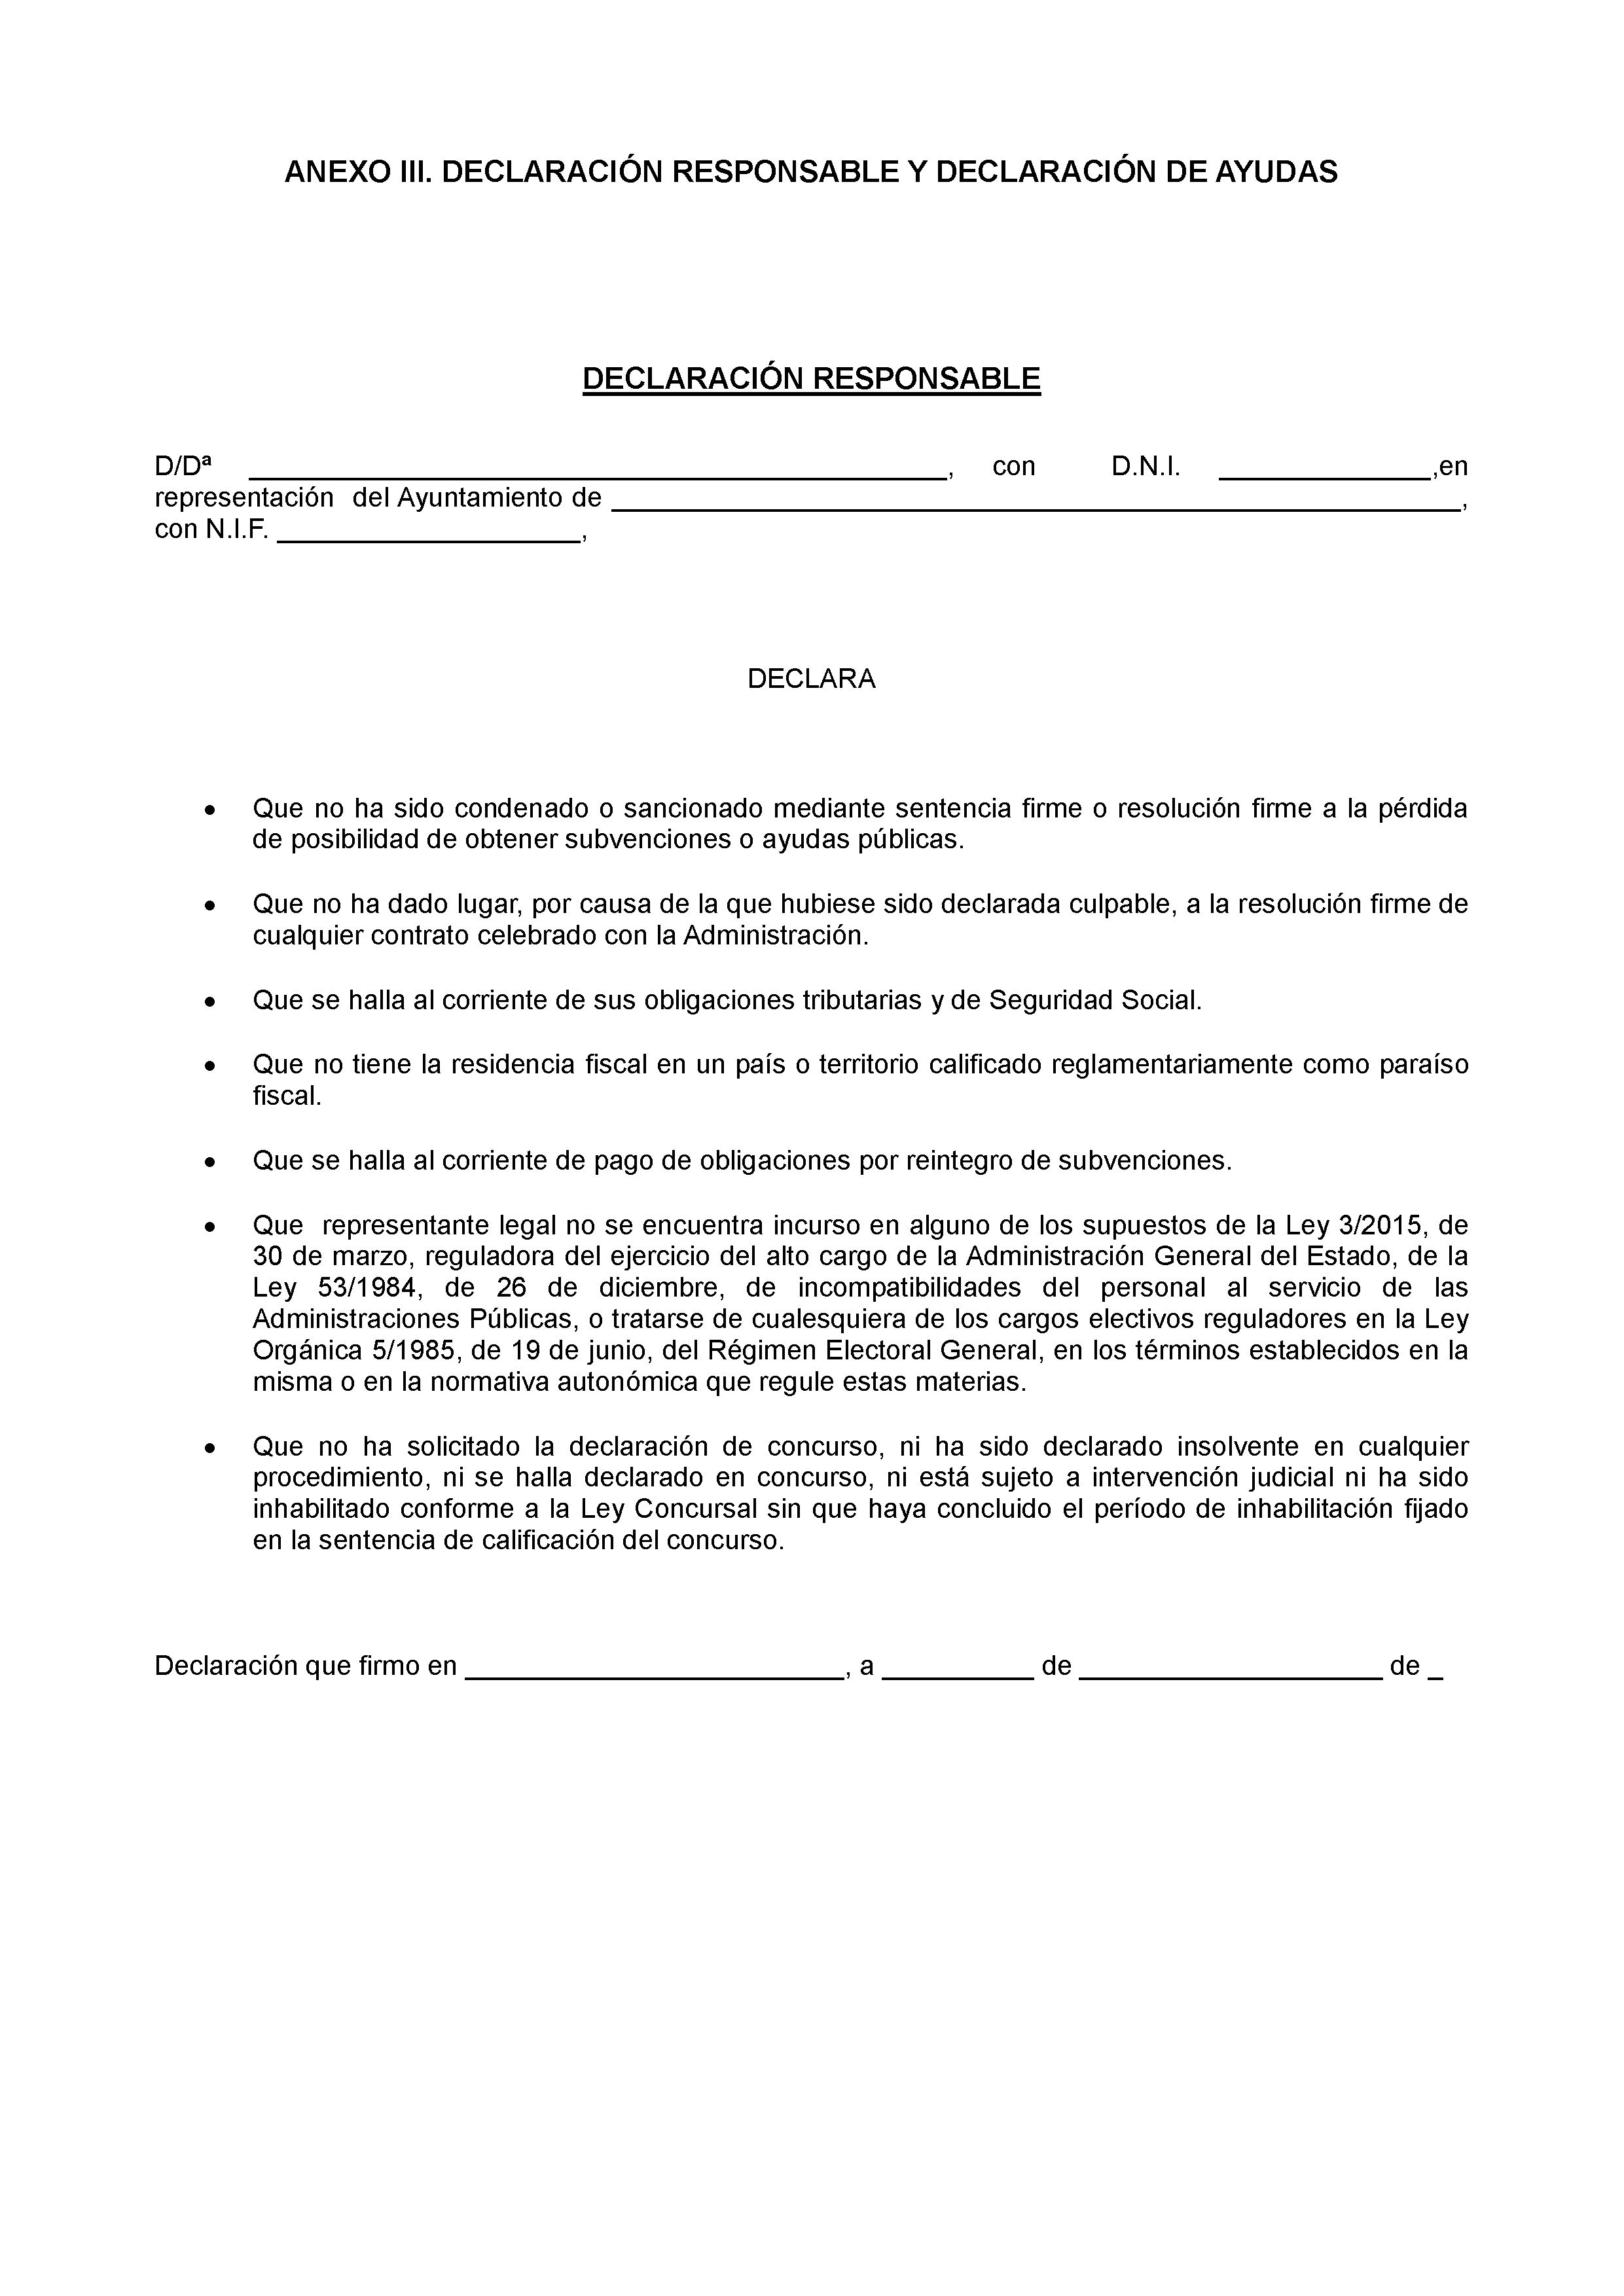 ANEXO III. DECLARACION RESPONSABLE Y DECLARACION DE AYUDAS PAG 1